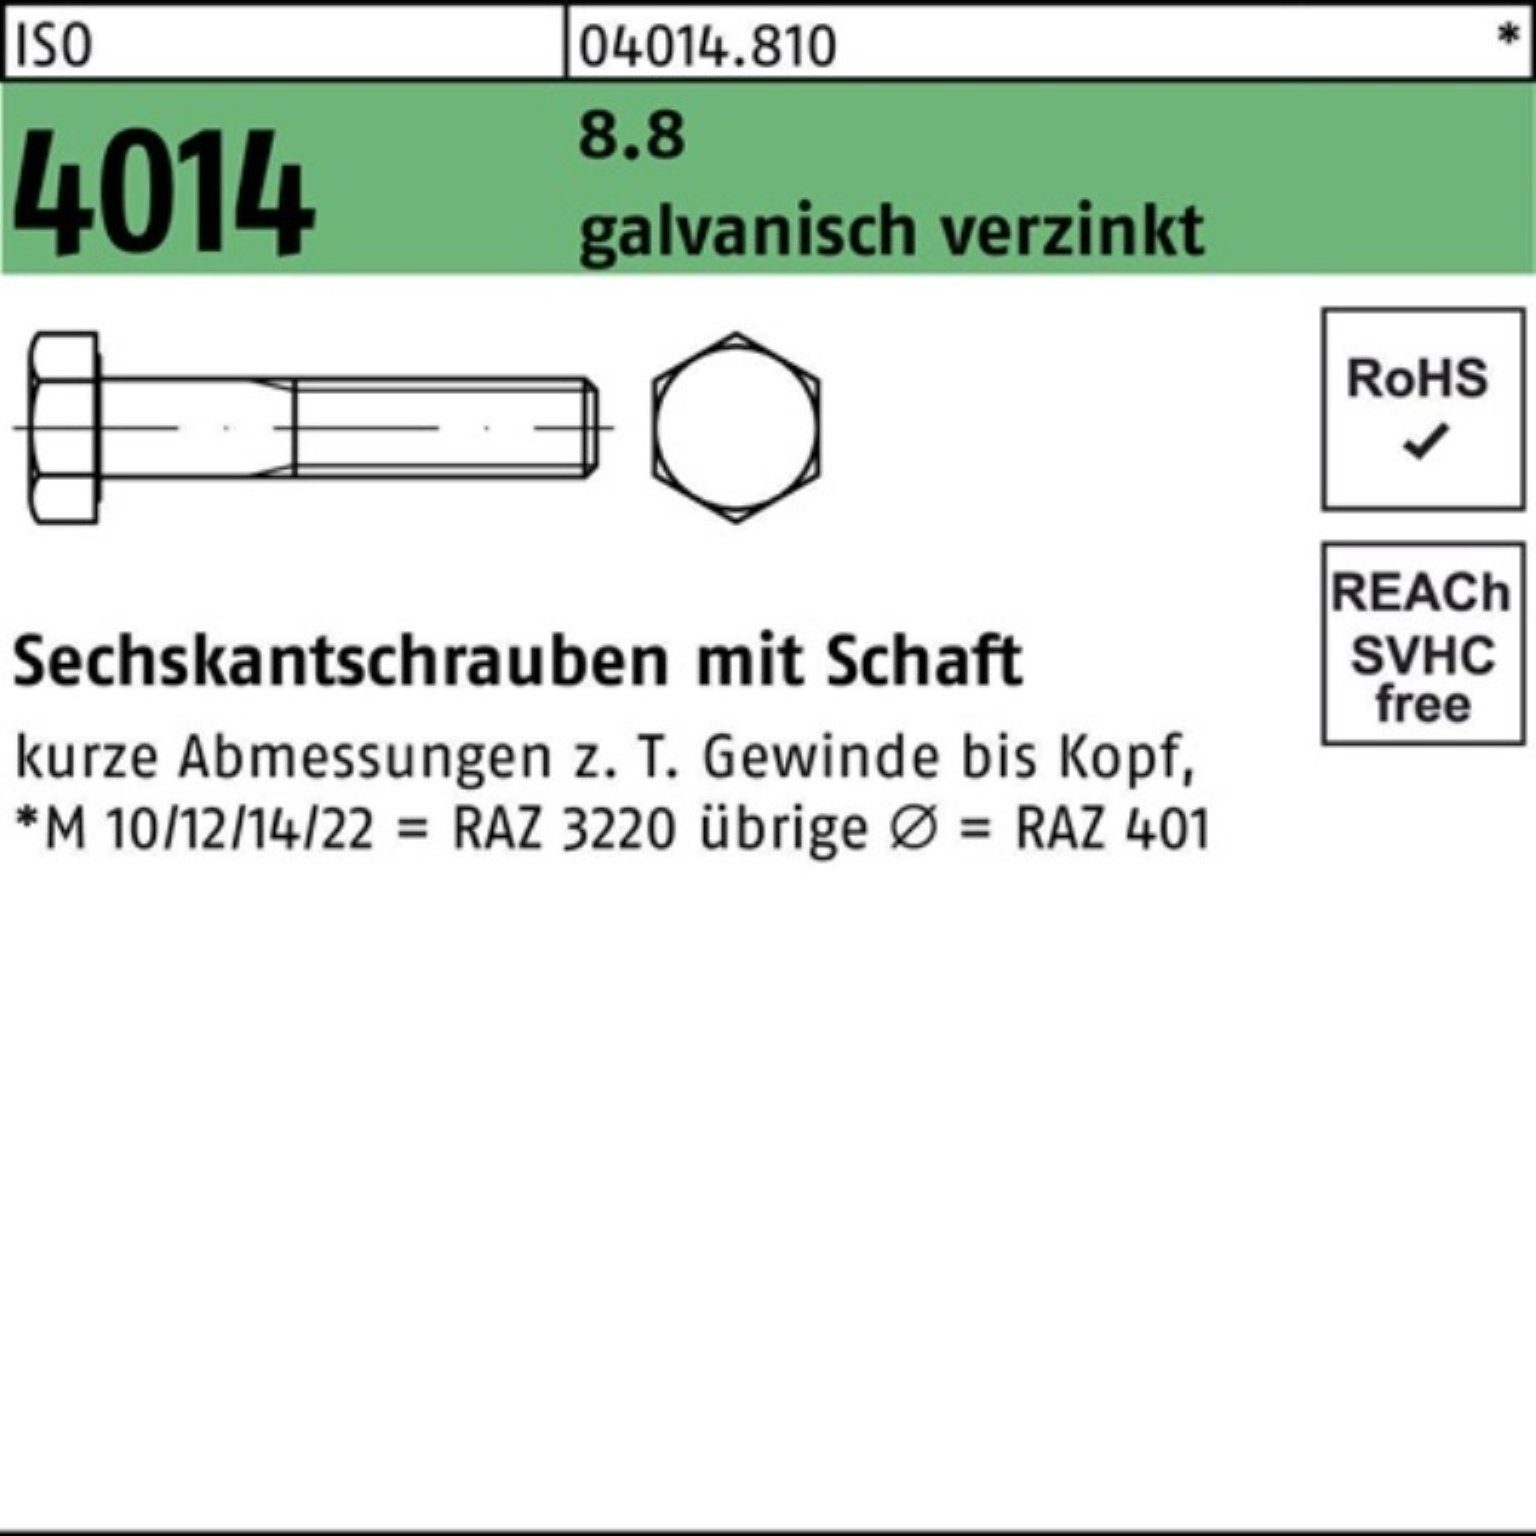 Bufab Sechskantschraube 200er 200 40 Pack M7x 8.8 ISO galv.verz. Sechskantschraube 4014 Schaft